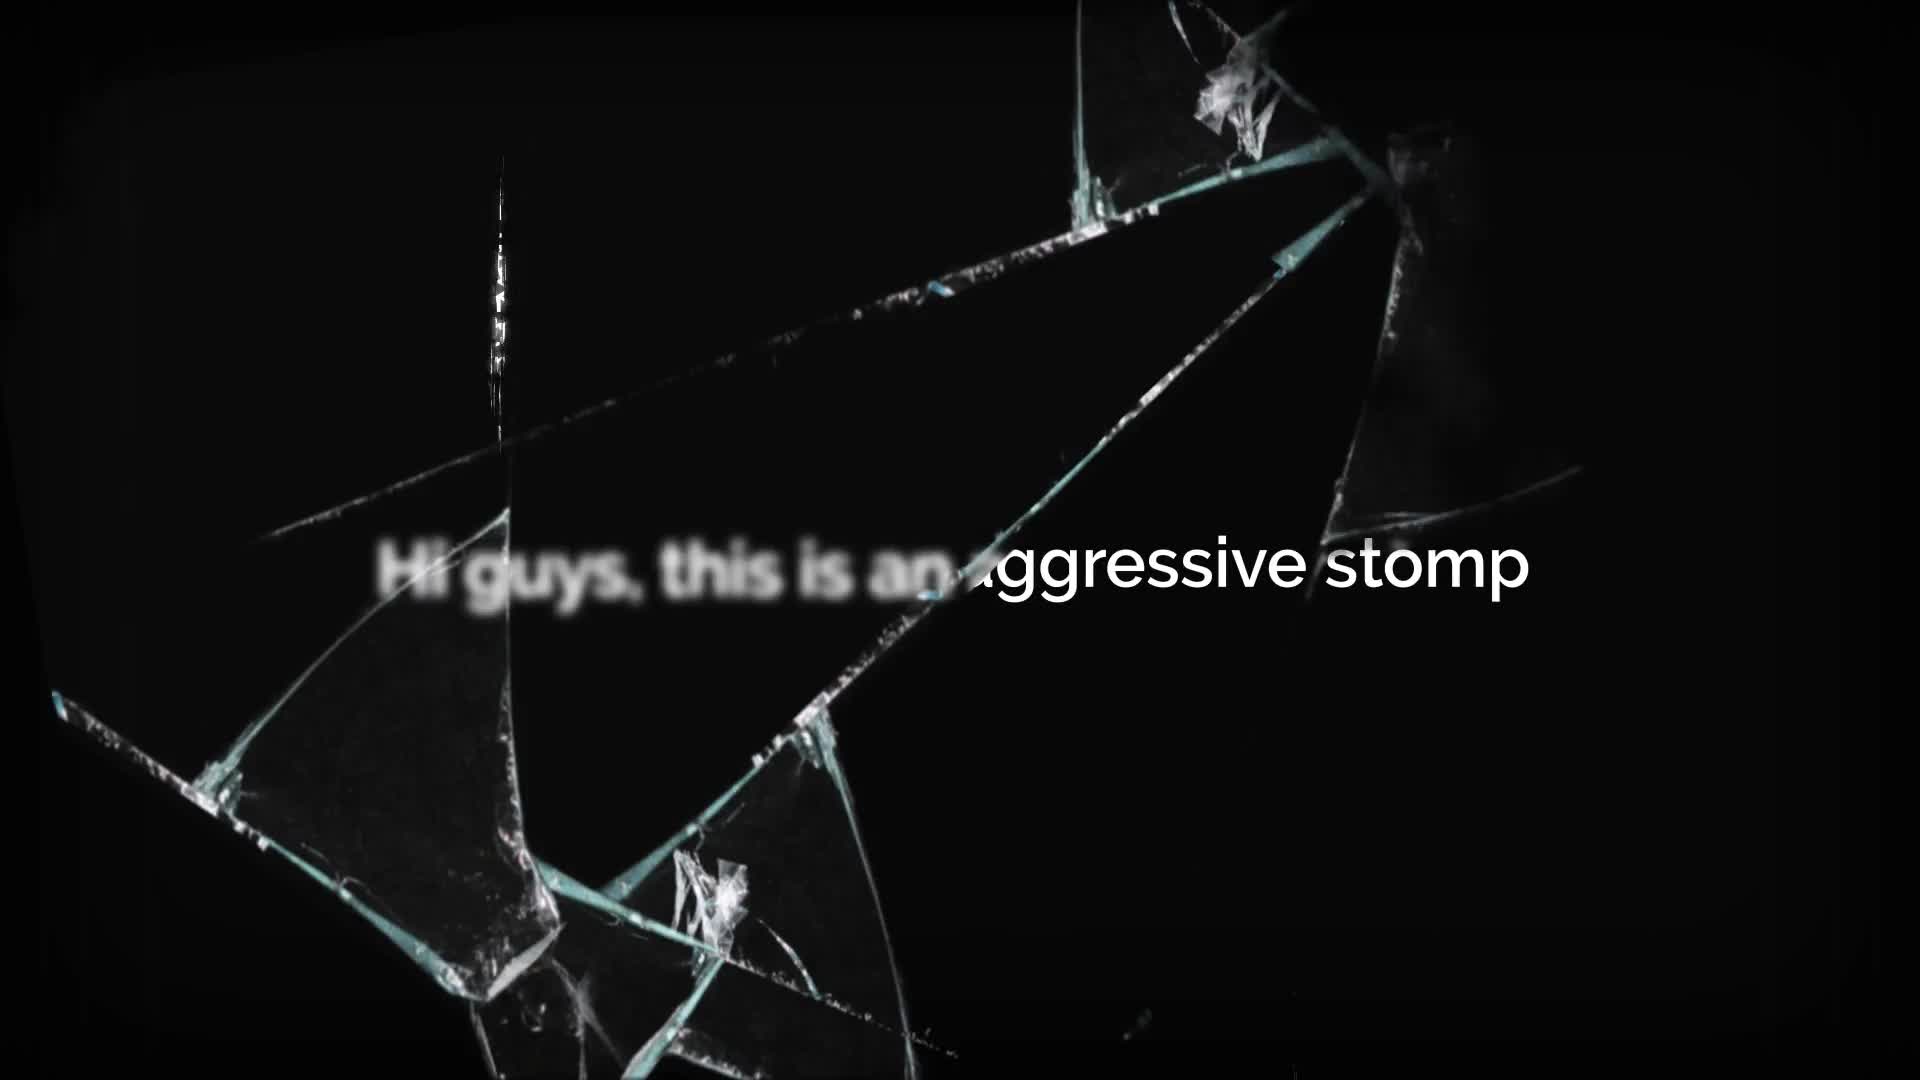 Agressive Glitch Stomp Videohive 25130248 Premiere Pro Image 1